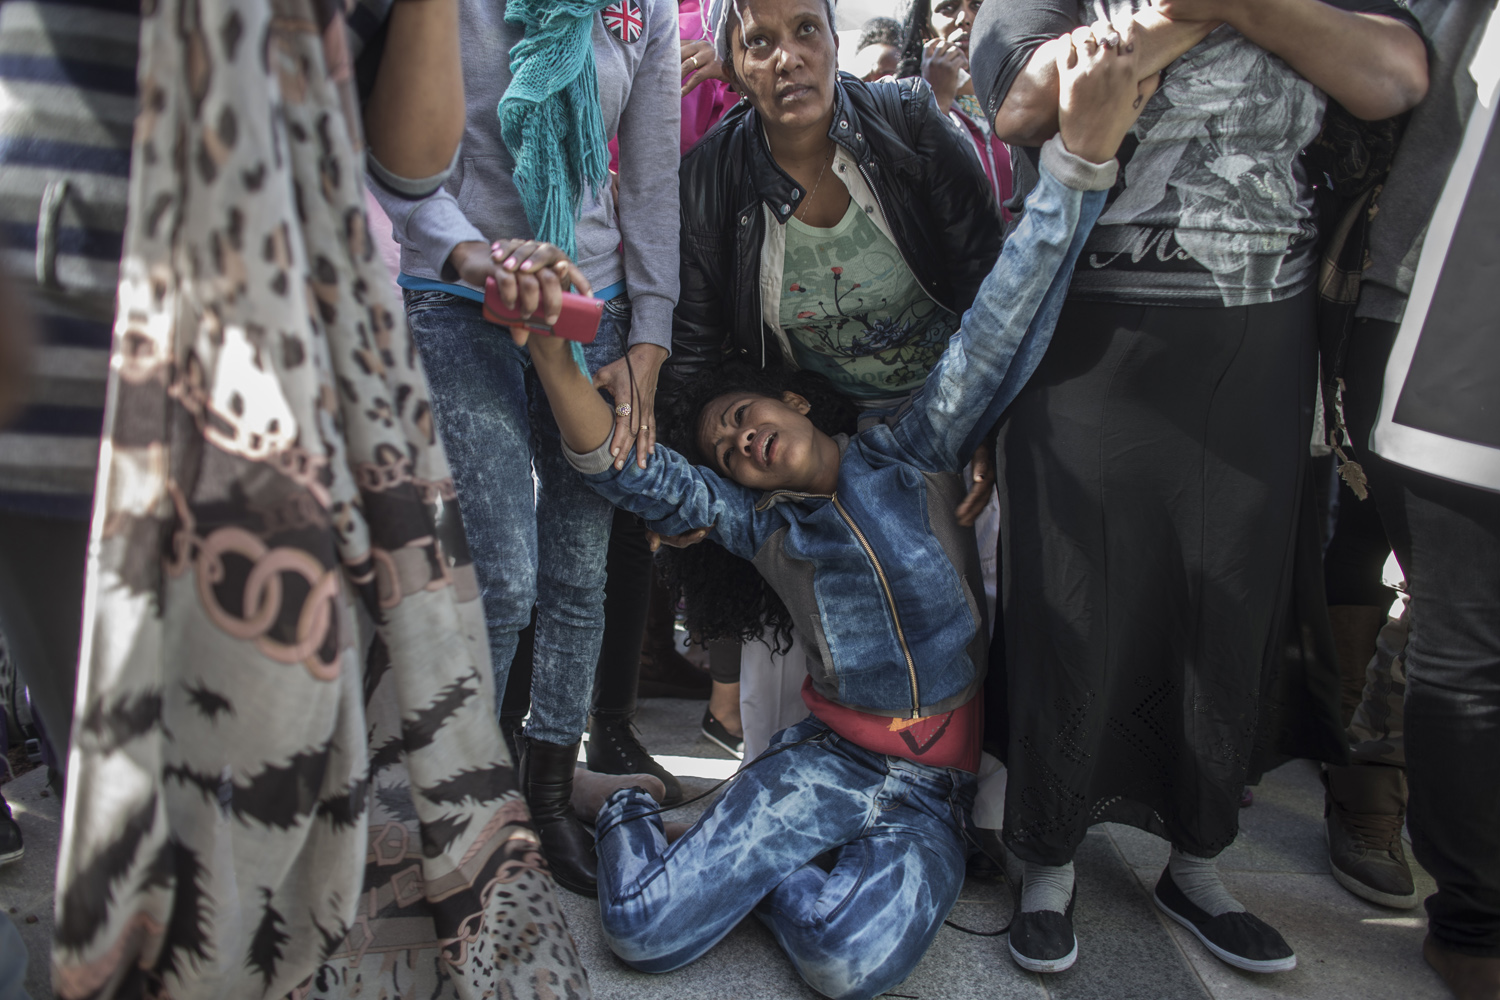 African asylum seekers protest in Tel Aviv